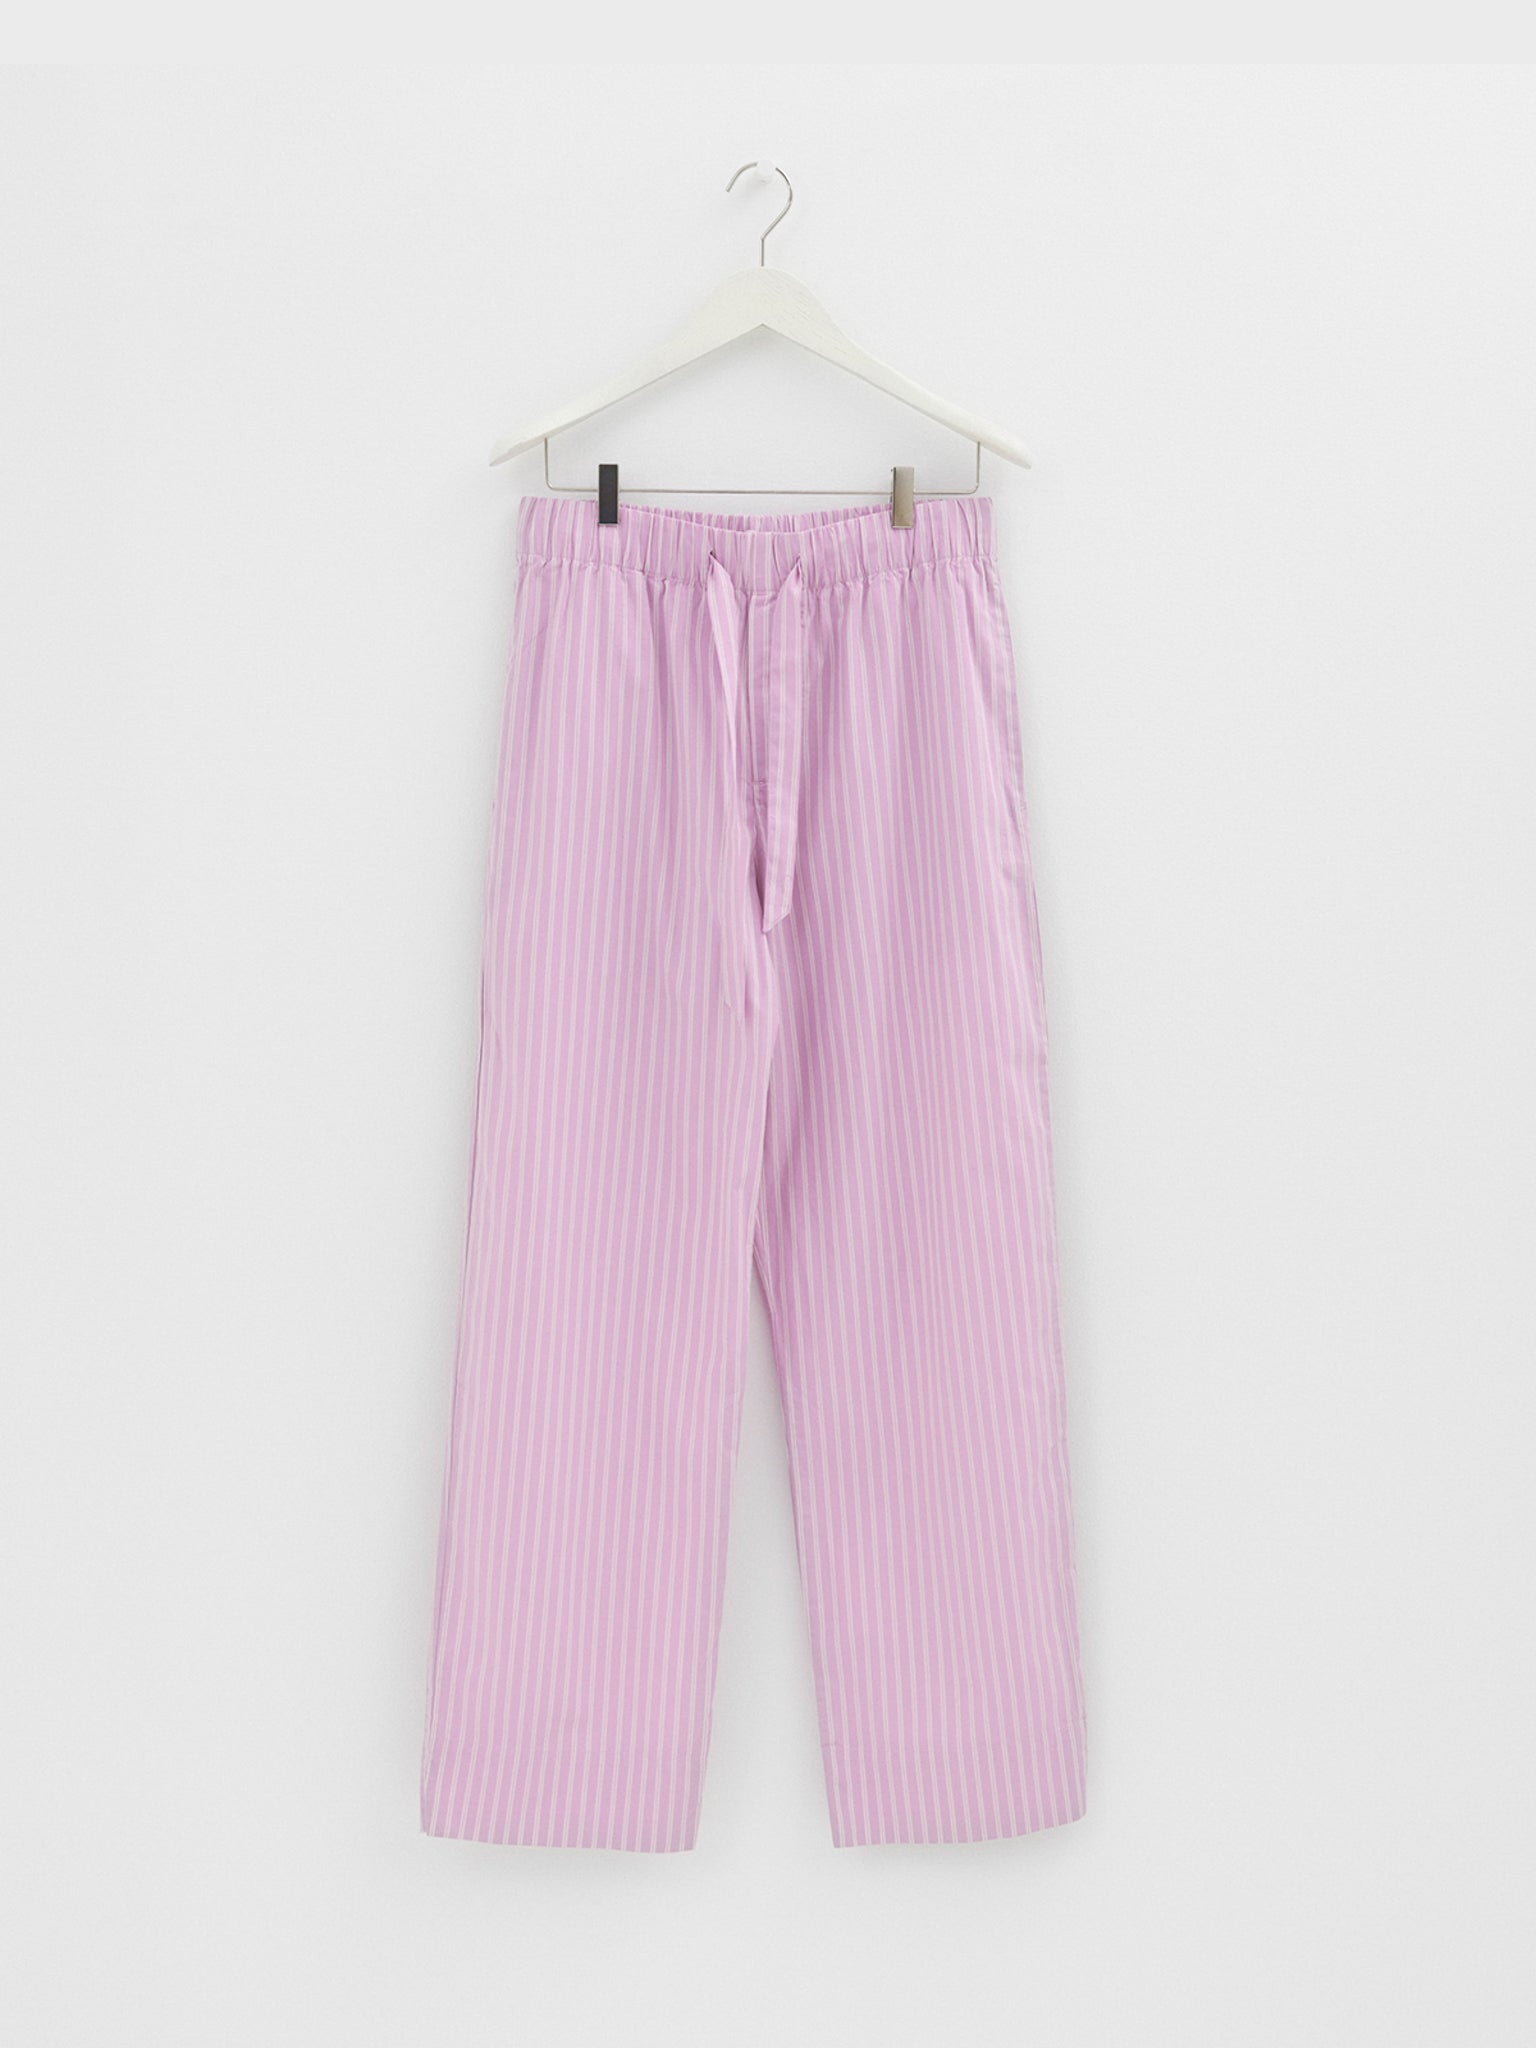 Tekla - Poplin Pyjamas Pants in Purple Pink Stripes